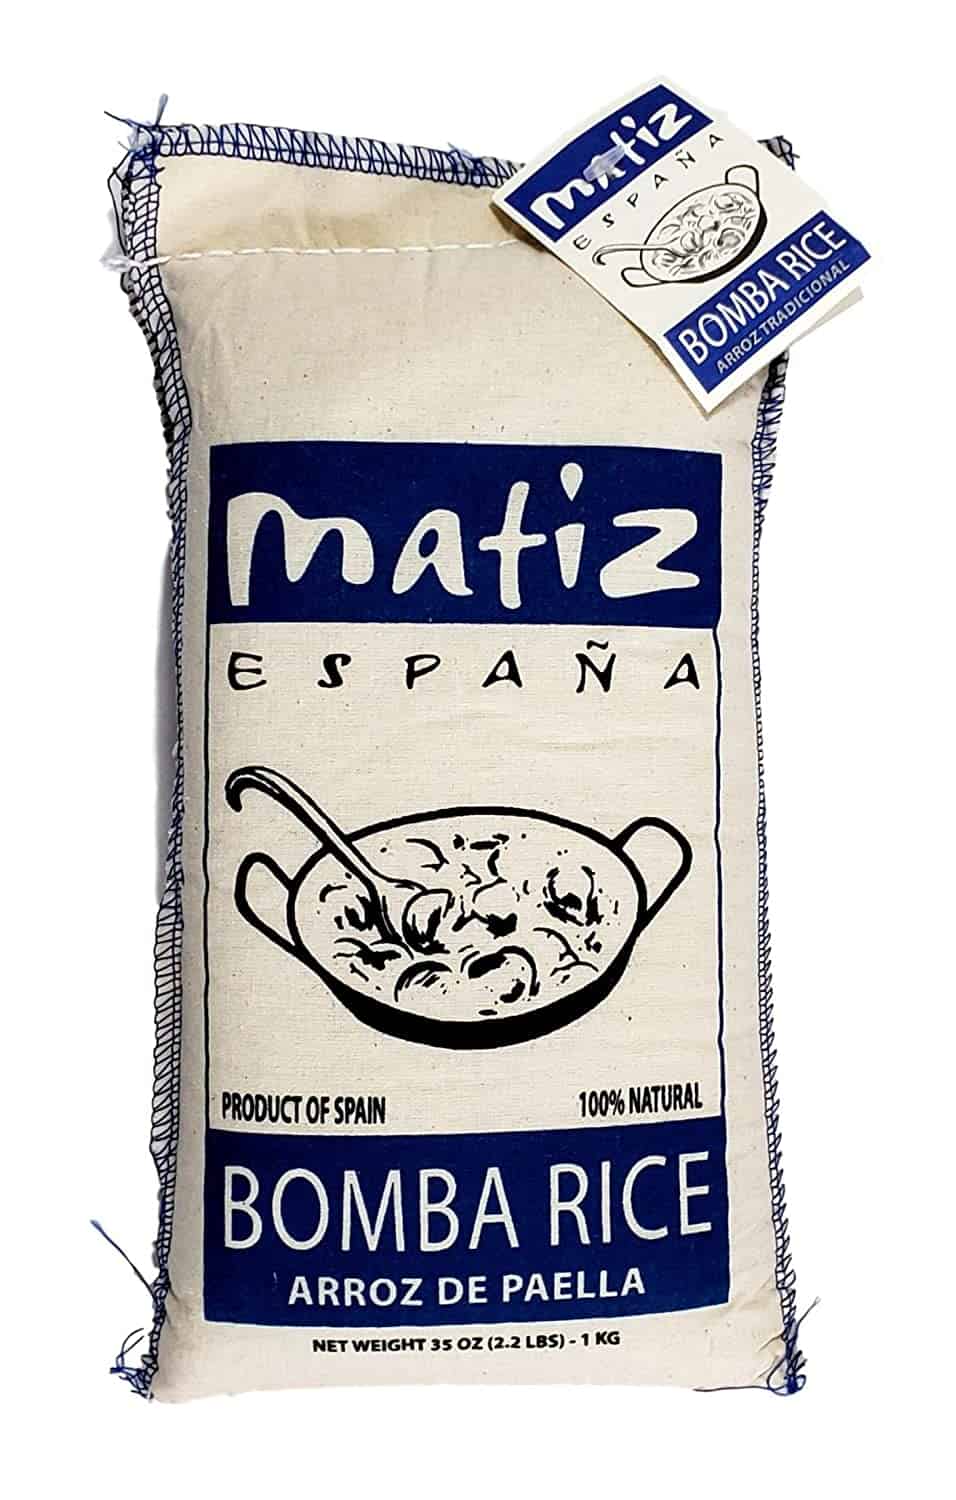 Spanskt bombaris som ersättning för klibbigt ris